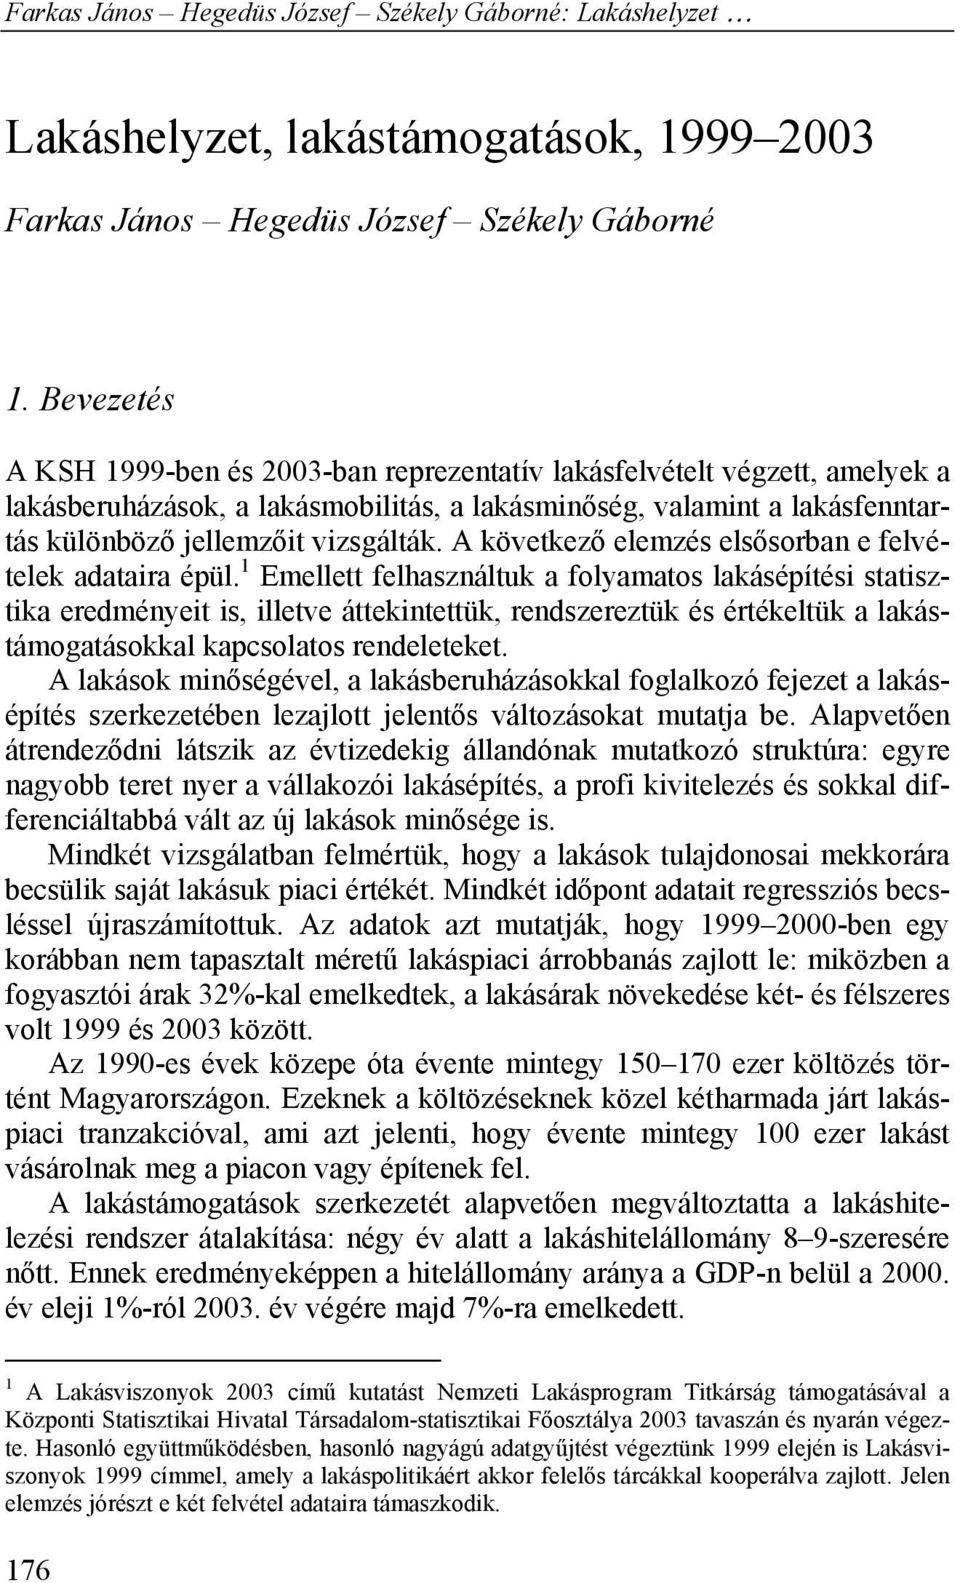 Farkas János Hegedüs József Székely Gáborné: Lakáshelyzet,  lakástámogatások, - PDF Ingyenes letöltés